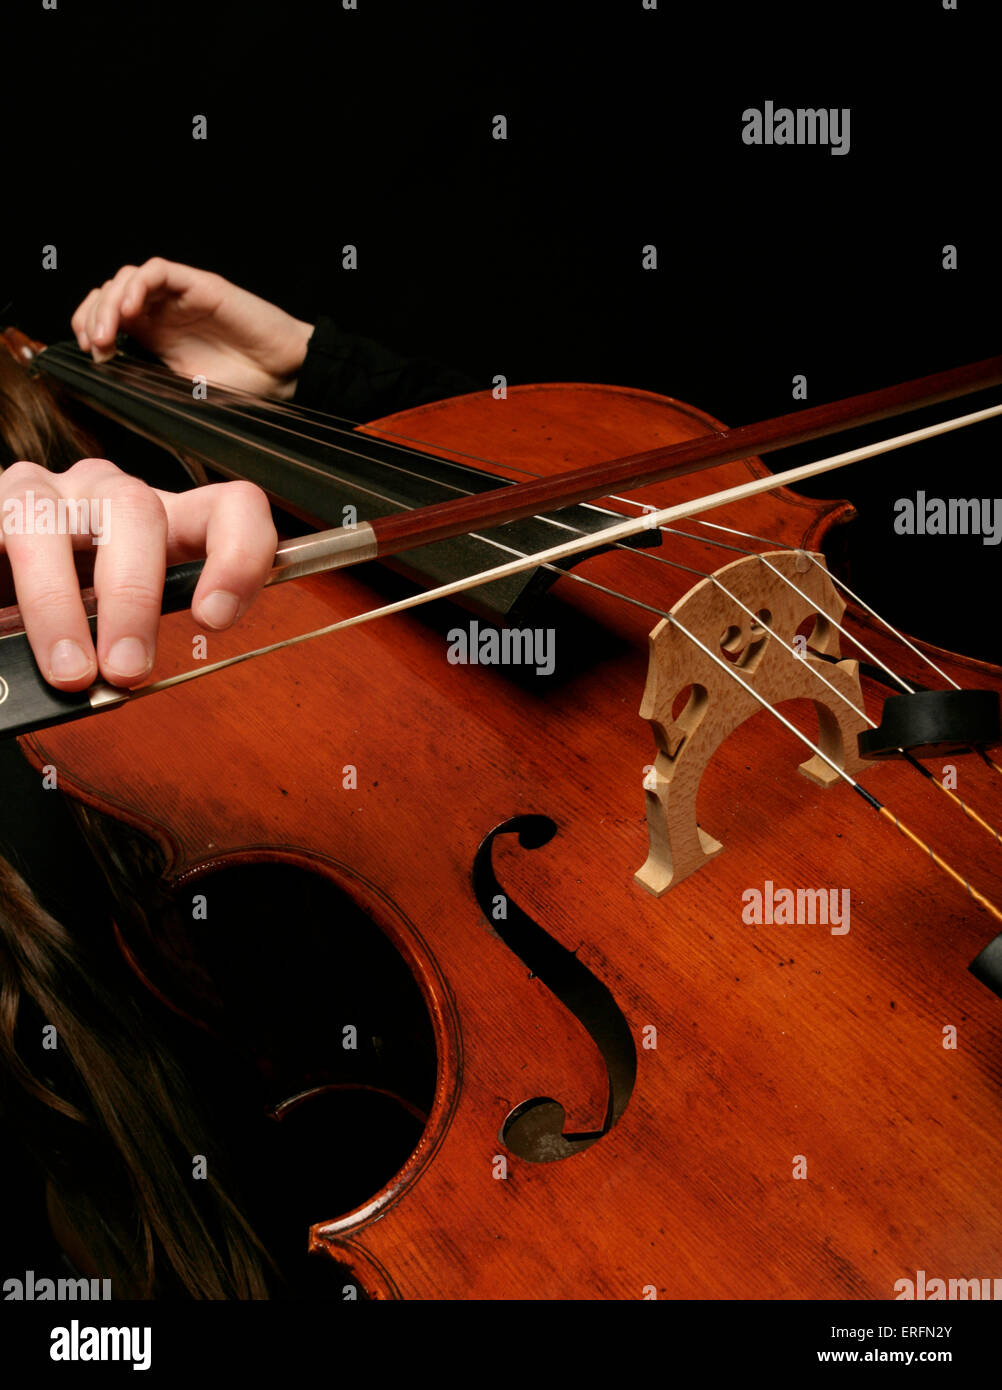 Violoncelle - la femme en position de jeu, le violoncelliste. Banque D'Images